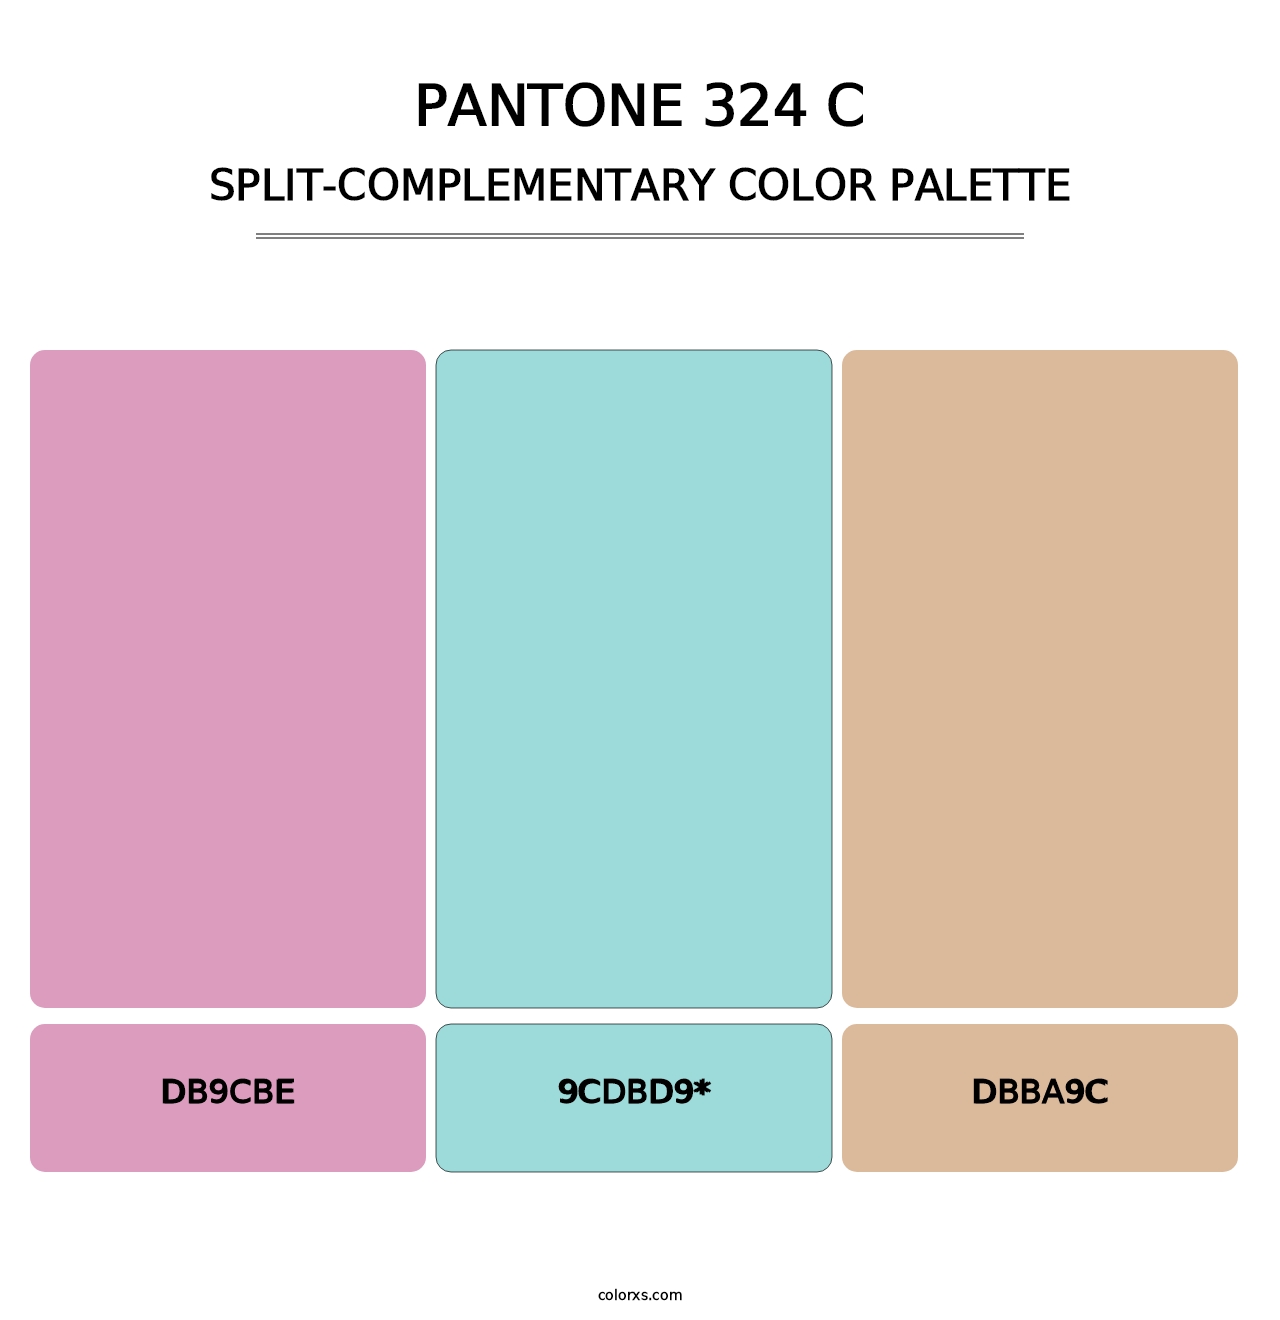 PANTONE 324 C - Split-Complementary Color Palette